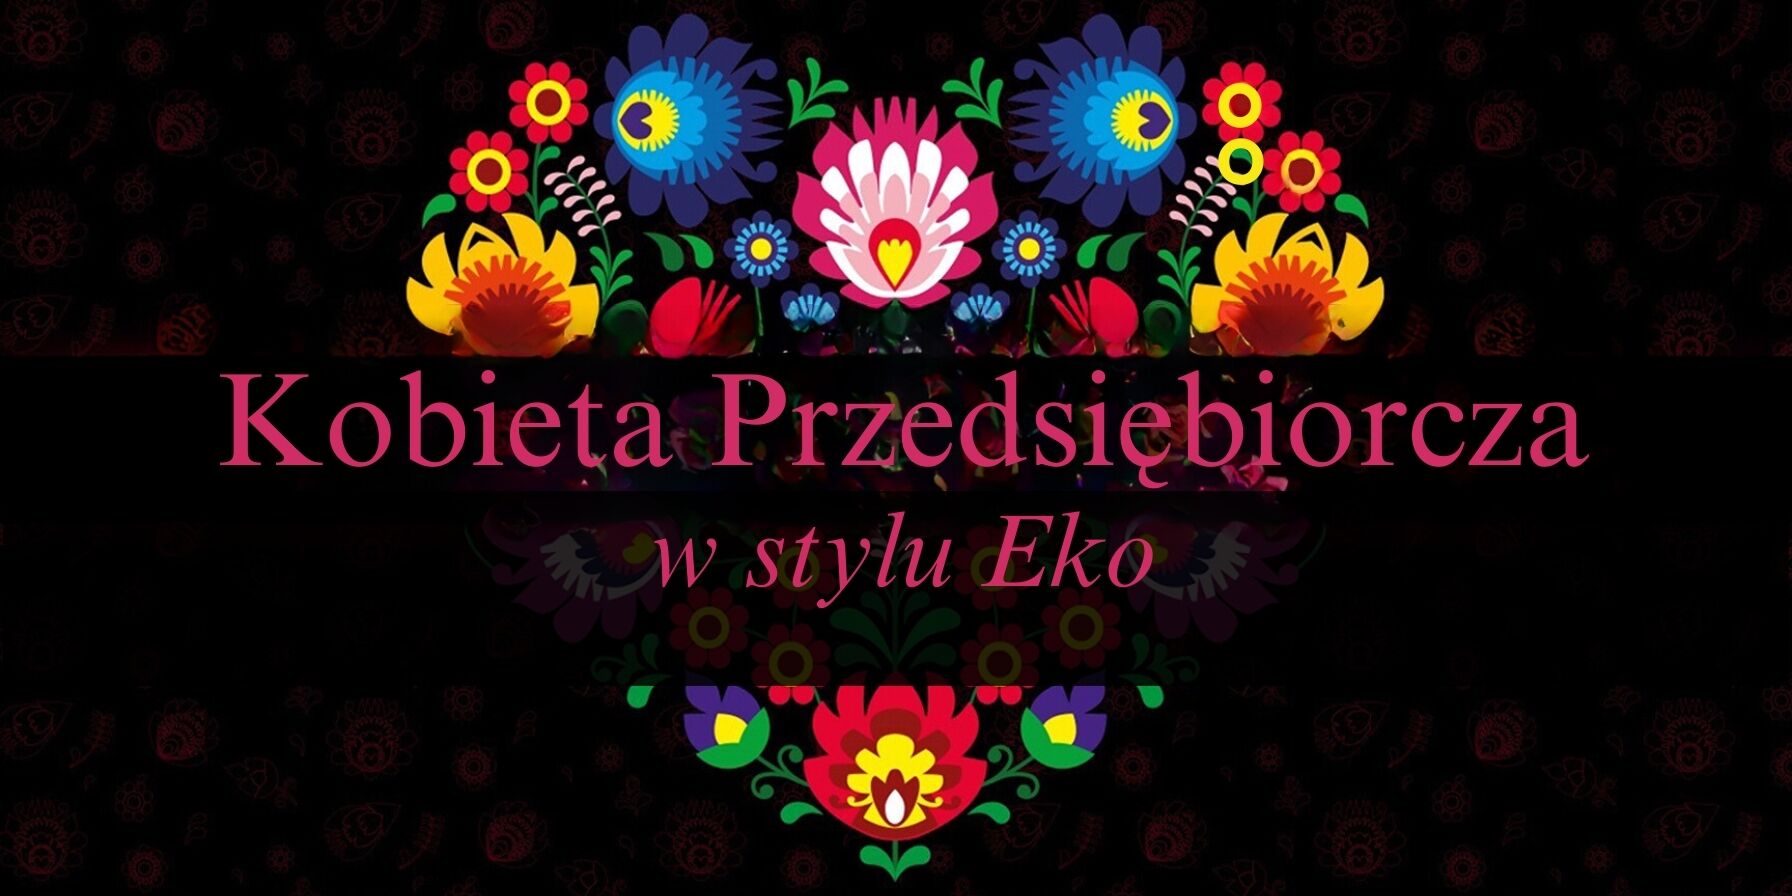 Alternatywny opis zdjęcia: Grafika promocyjna z napisem "Kobieta Przedsiębiorcza w stylu Eko" na czarnym tle, z kolorowym, symetrycznym wzorem kwiatowym nad i pod tekstem, odbijającym się jak w lustrze.